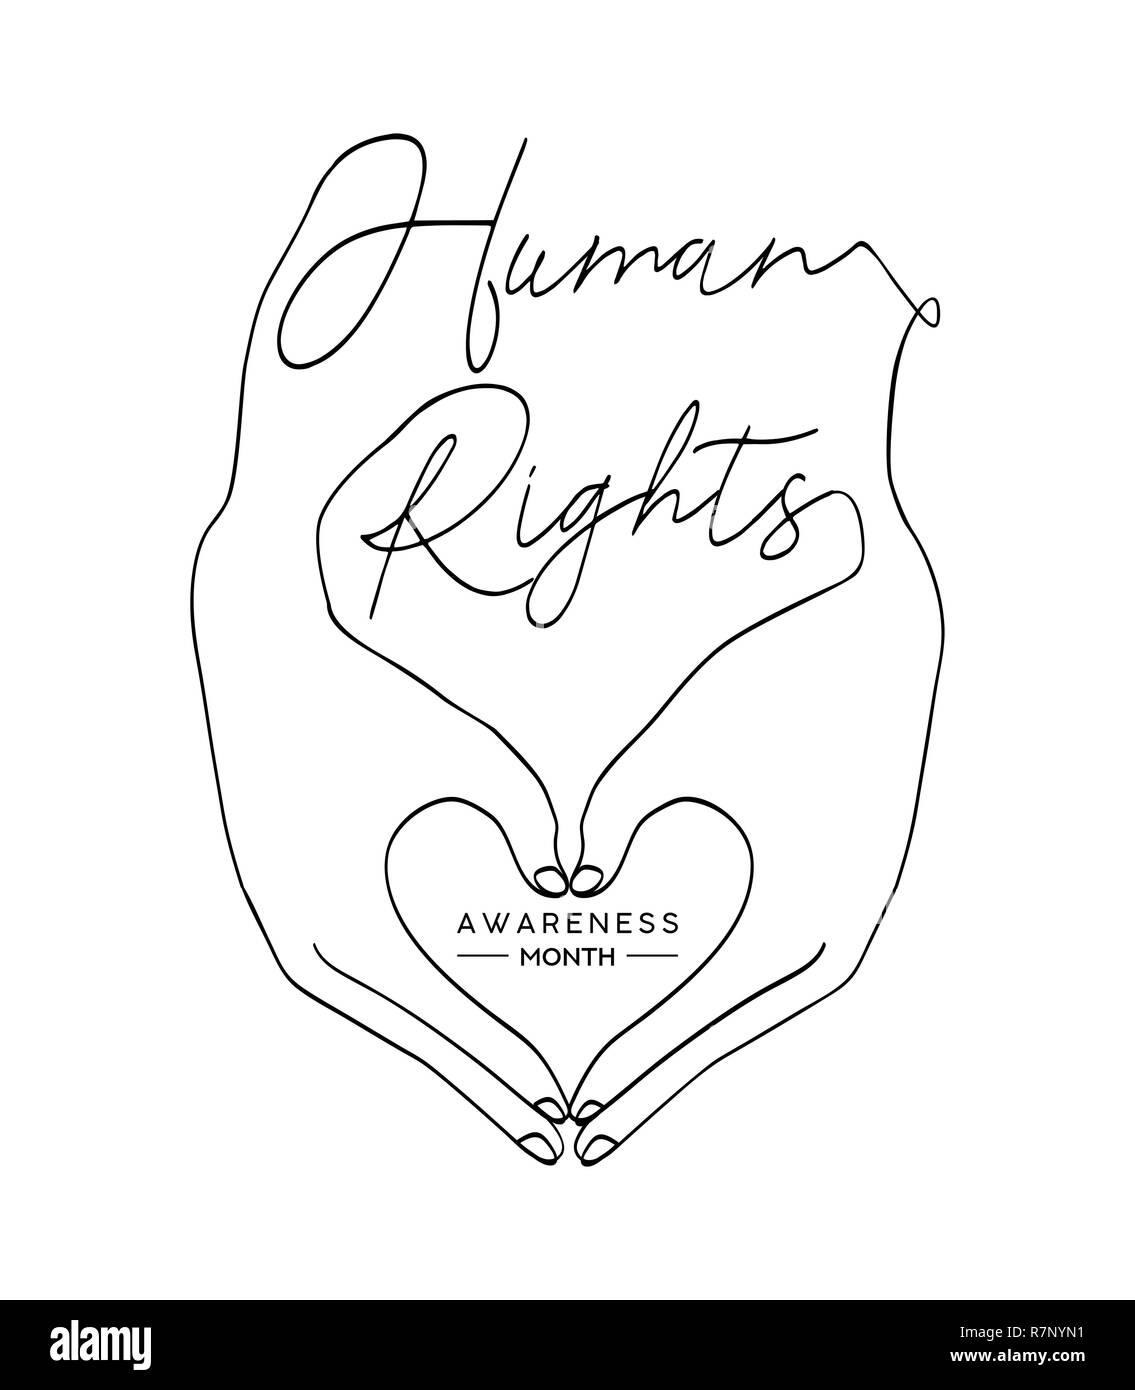 Internazionale dei Diritti Umani giornata di sensibilizzazione illustrazione per la parità globale e anti schiavitù moderna con le mani a forma di cuore. Amore e Libertà concetto Illustrazione Vettoriale